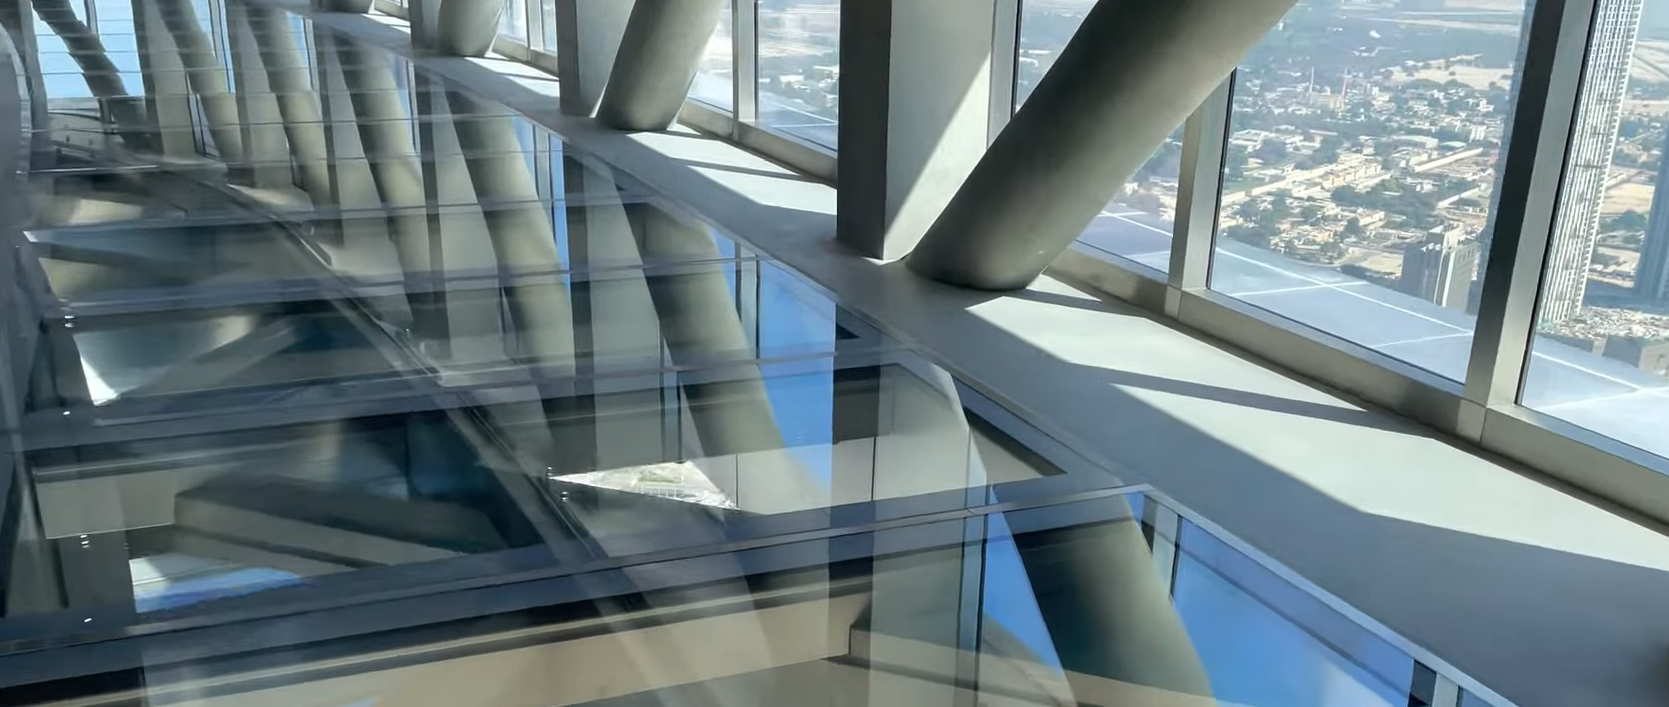 Sky Views в Дубае - Стеклянный пол на смотровой площадке